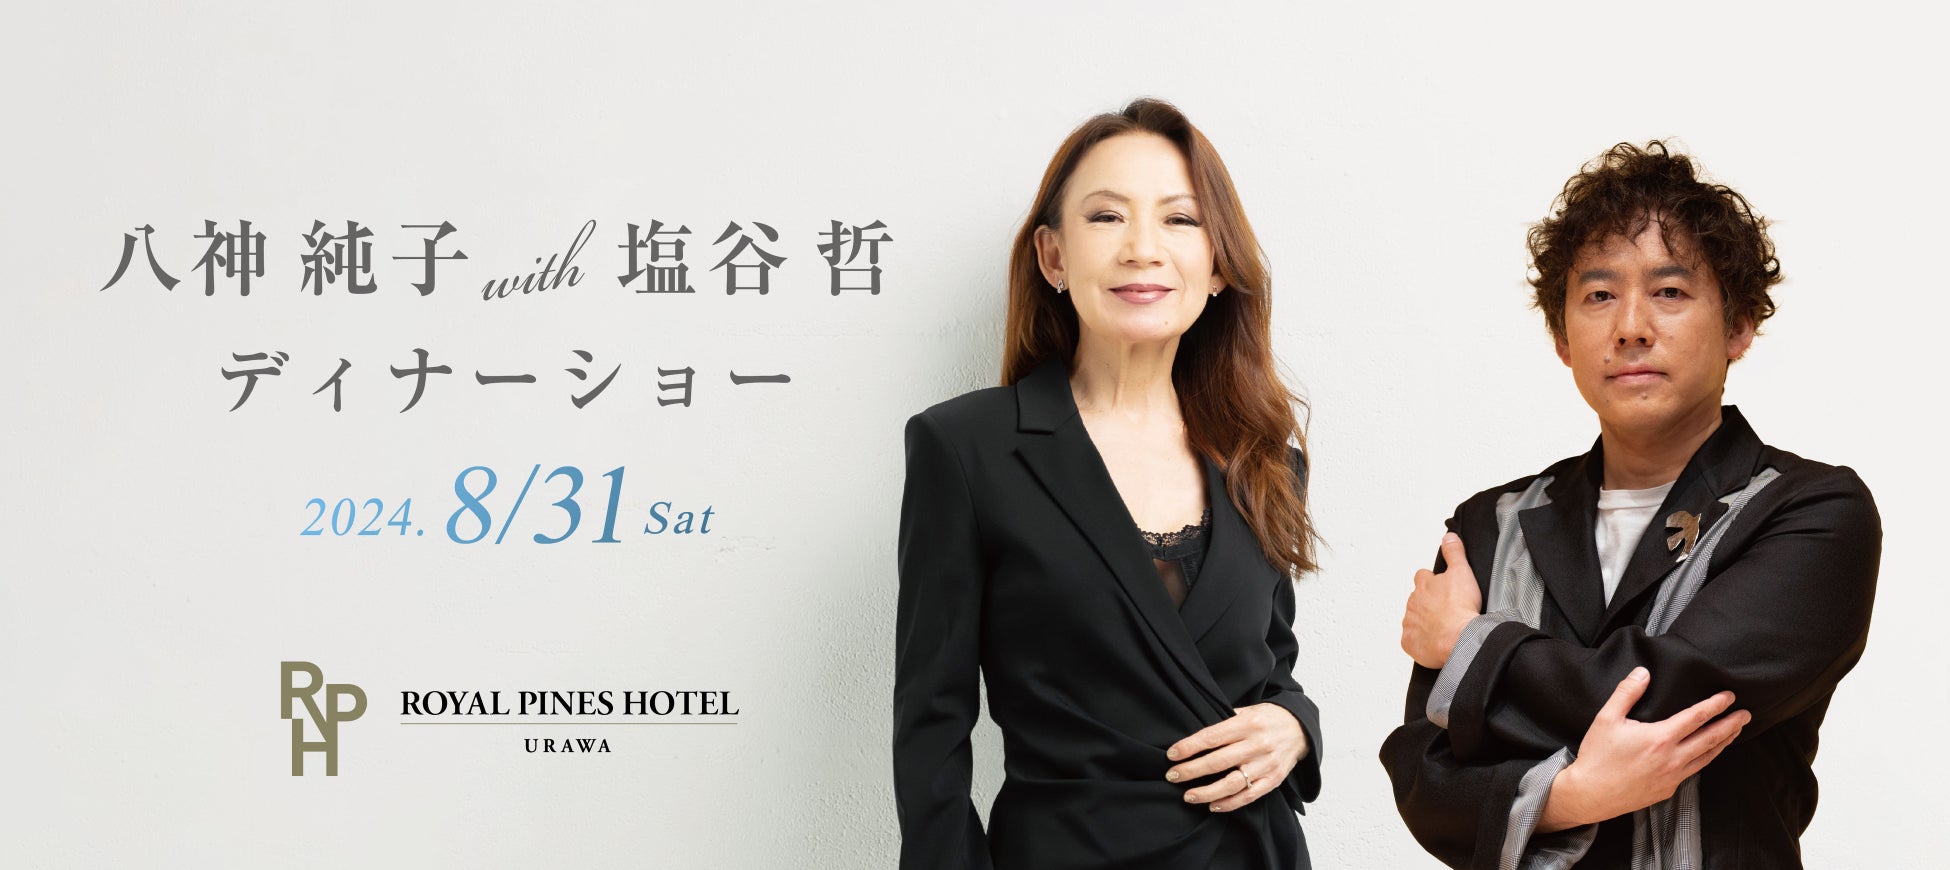 八神 純子 with 塩谷 哲 ディナーショー 8/31（土）ロイヤルパインズホテル浦和で開催決定！